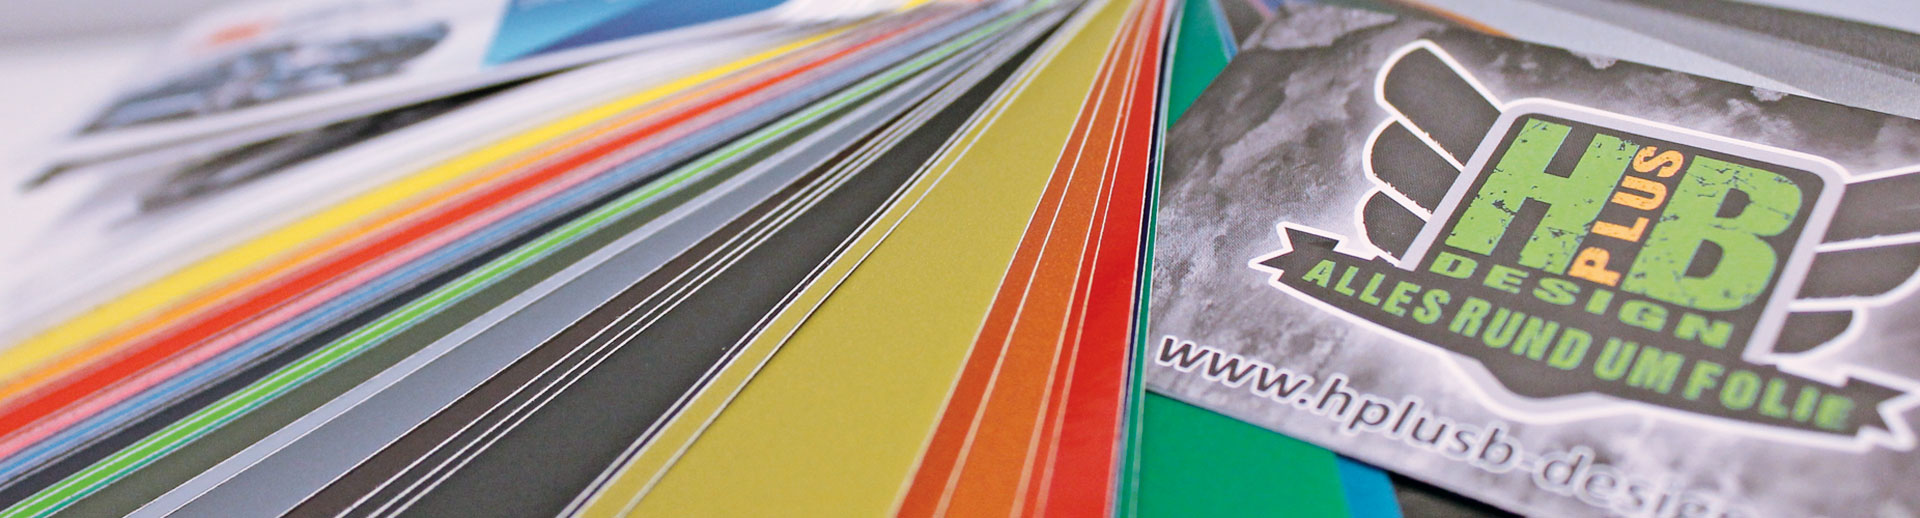 Farbfächer für Folienbeklebung aus der Werbetechnik von HplusB Design